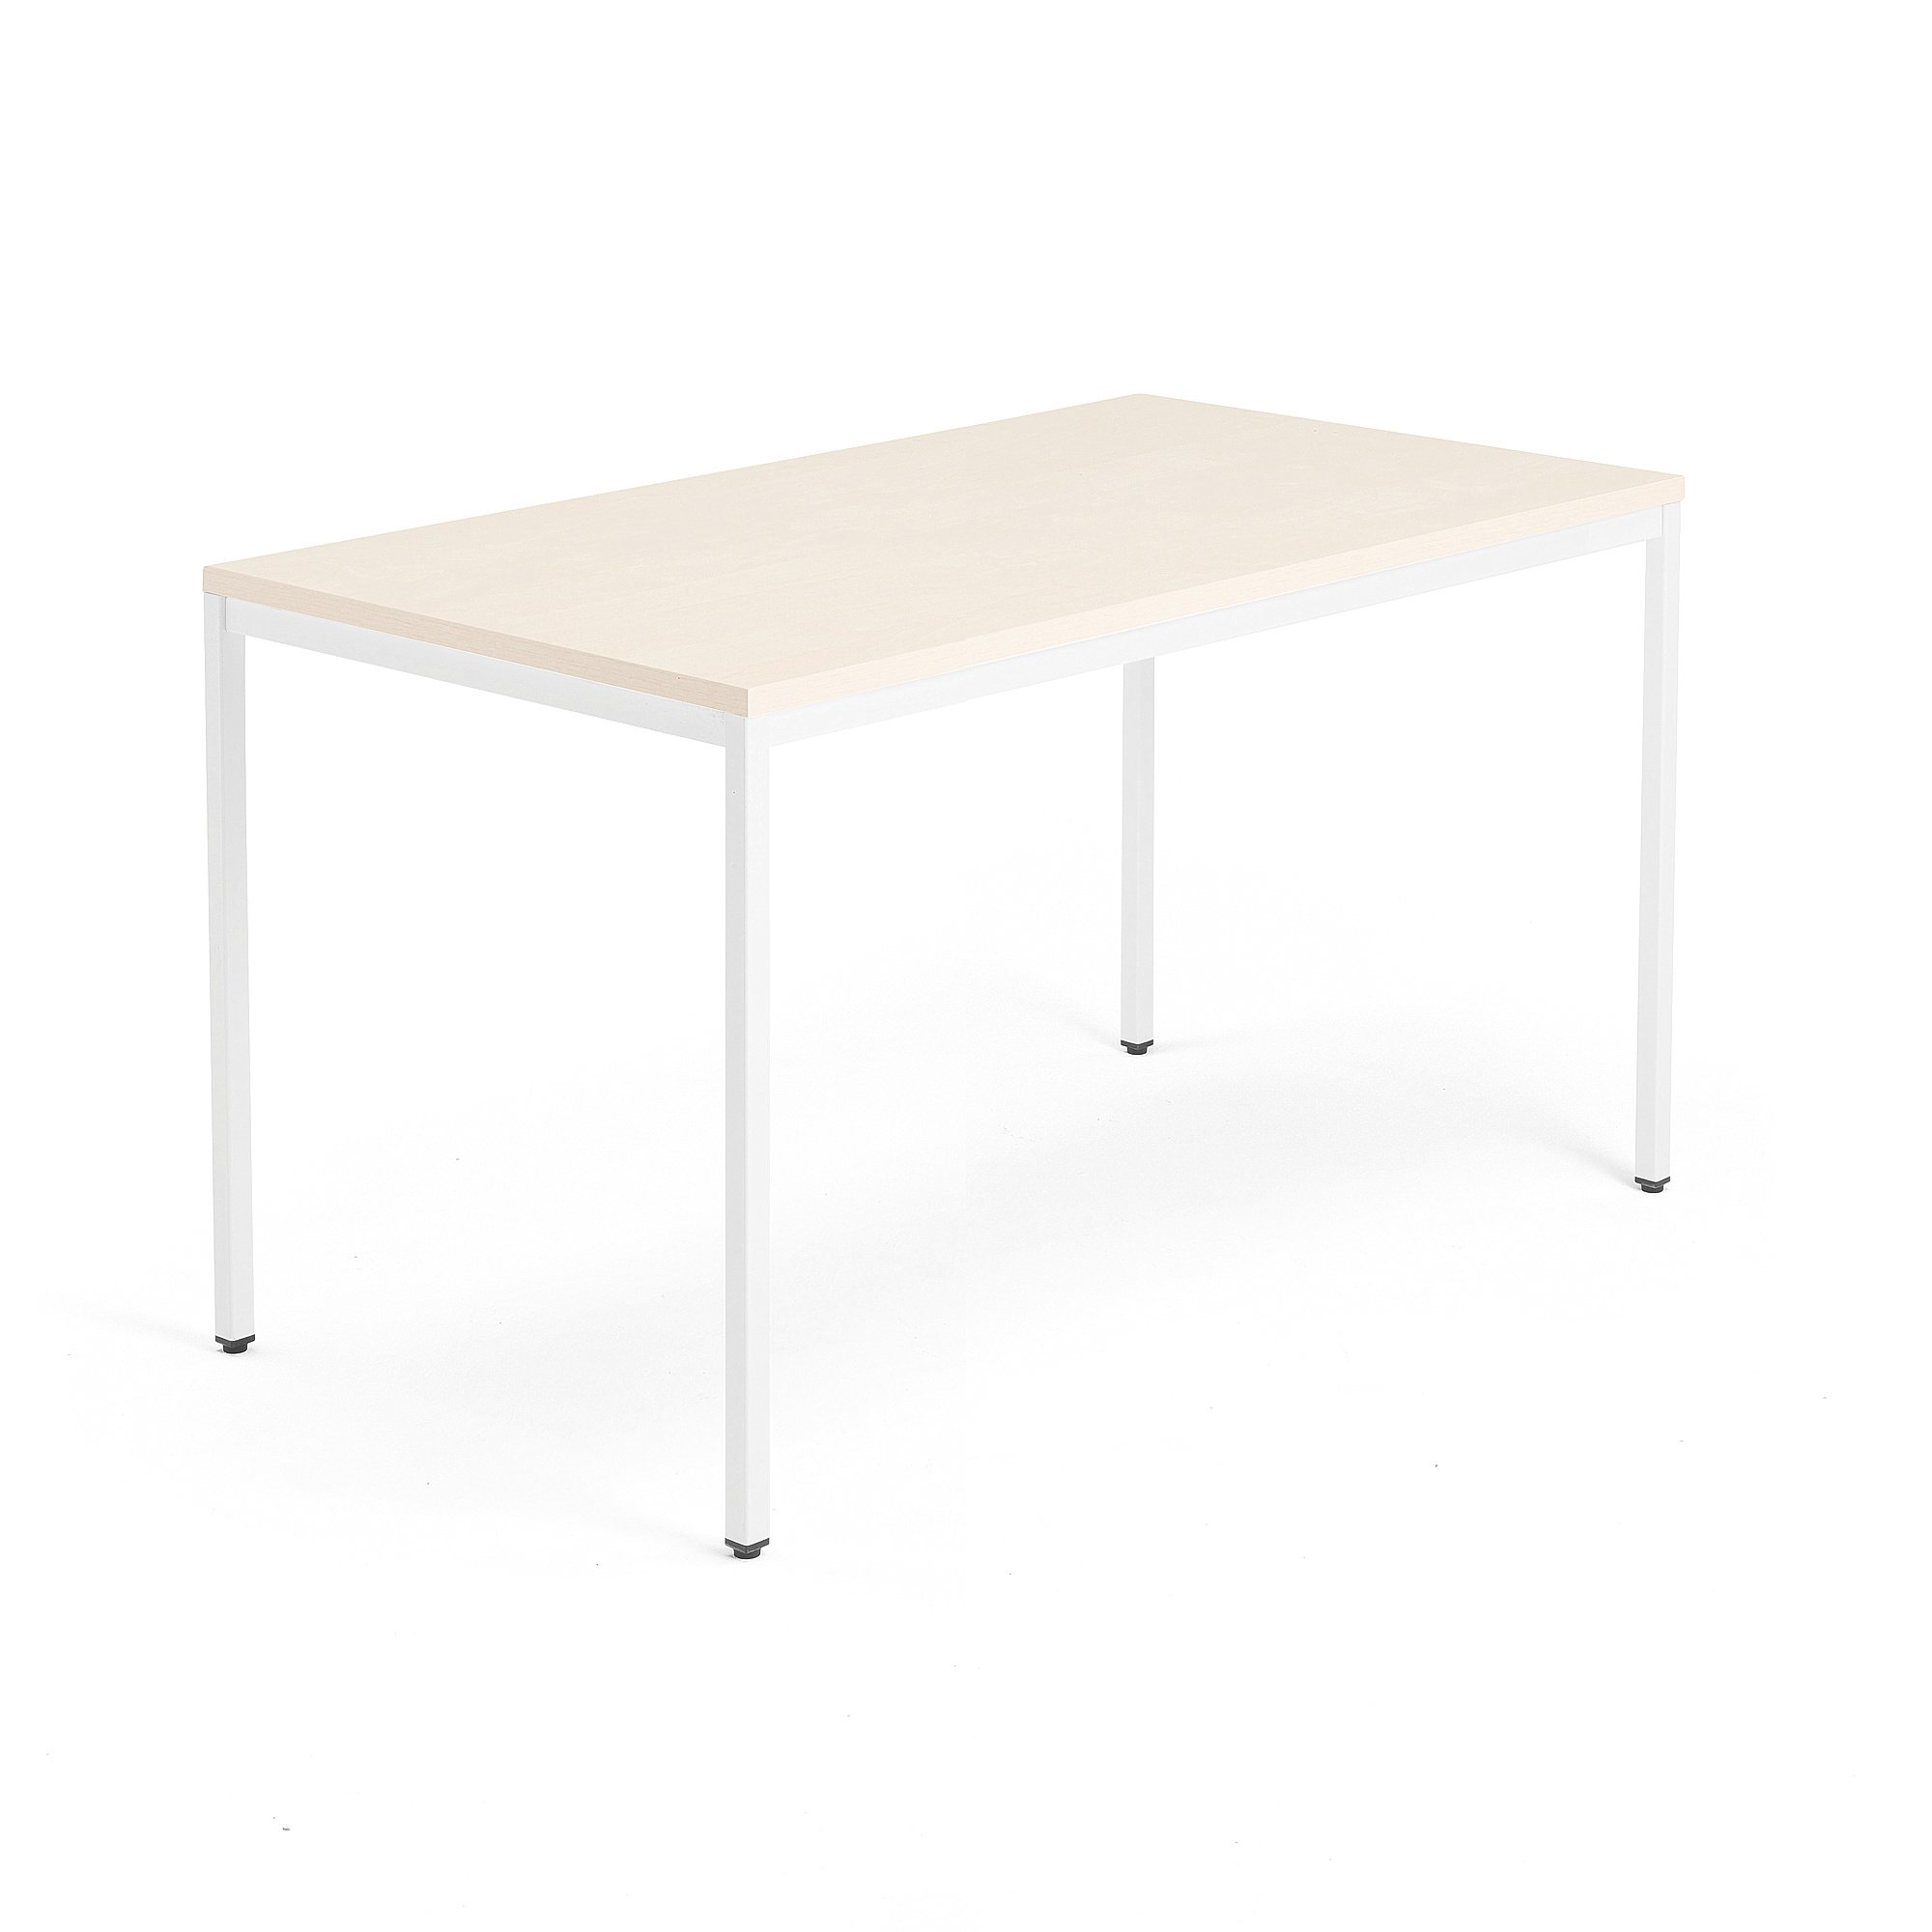 Psací stůl QBUS, 4 nohy, 1400x800 mm, bílý rám, bříza